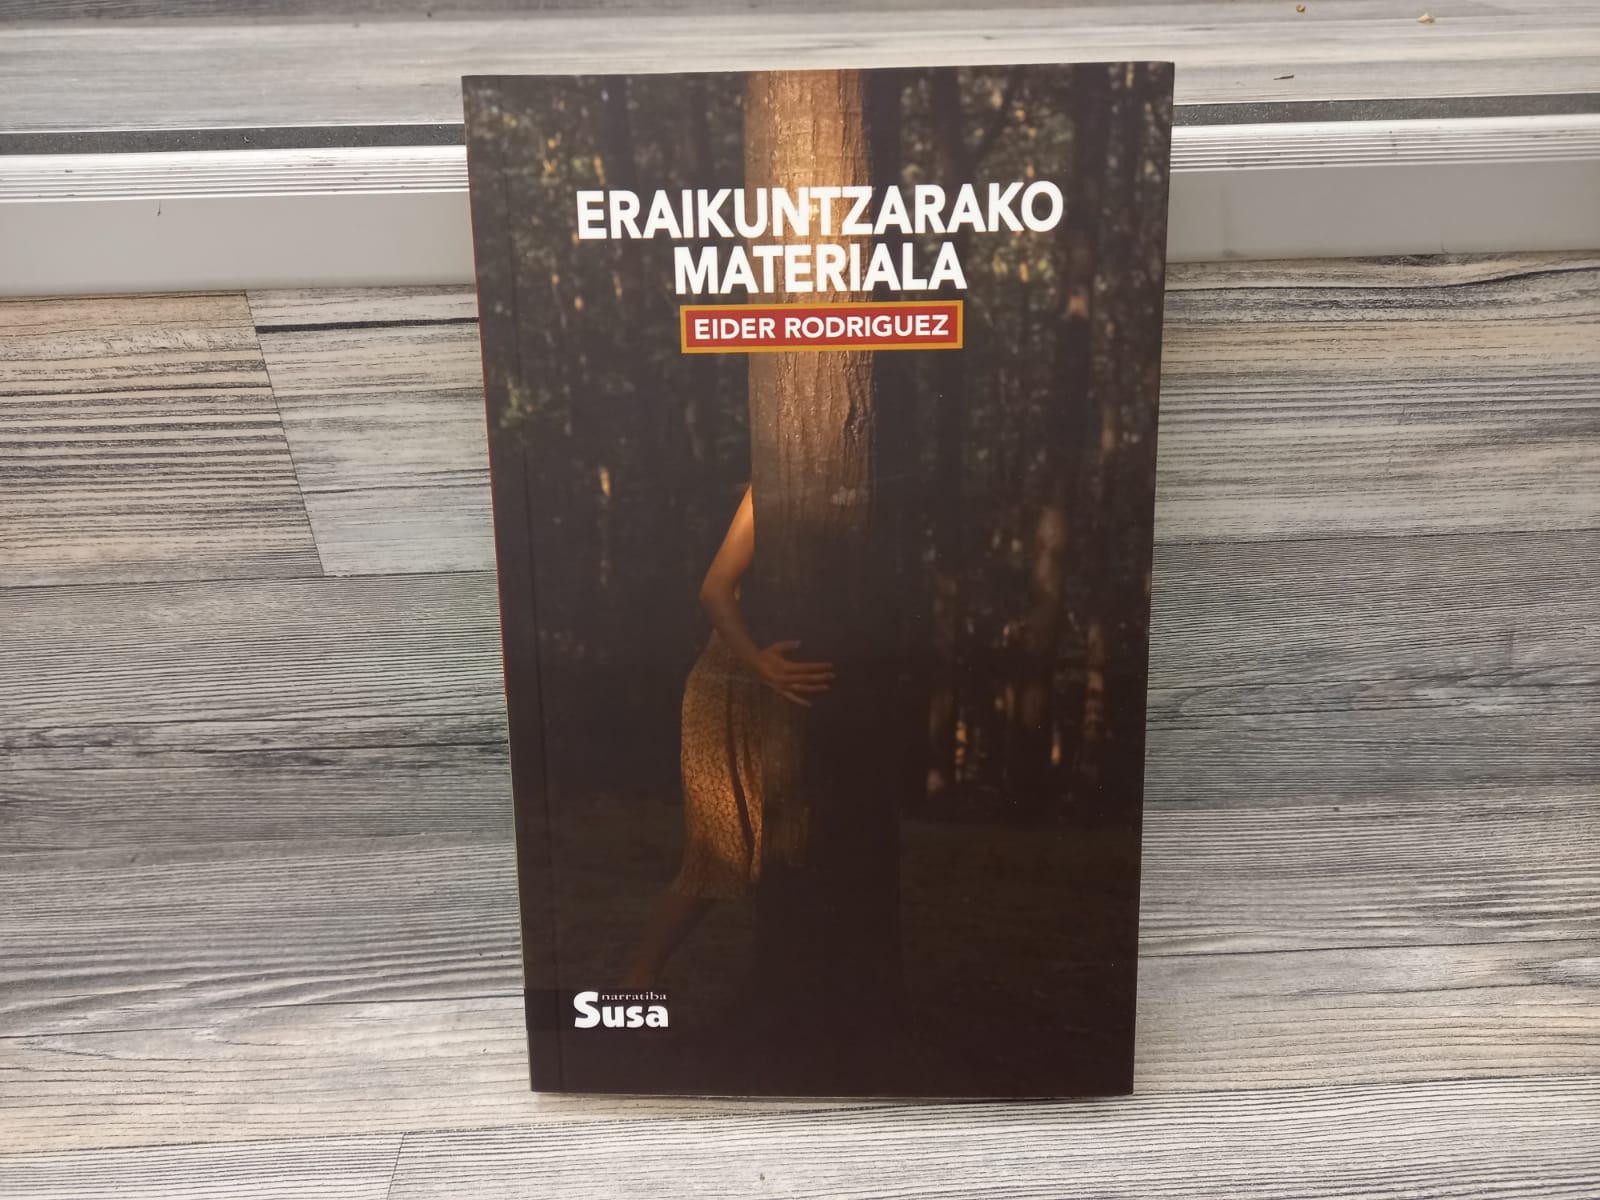 Eraikuntzarako materiala - Los libreros invitan a un "gran reencuentro" en la feria del sábado en Donostia